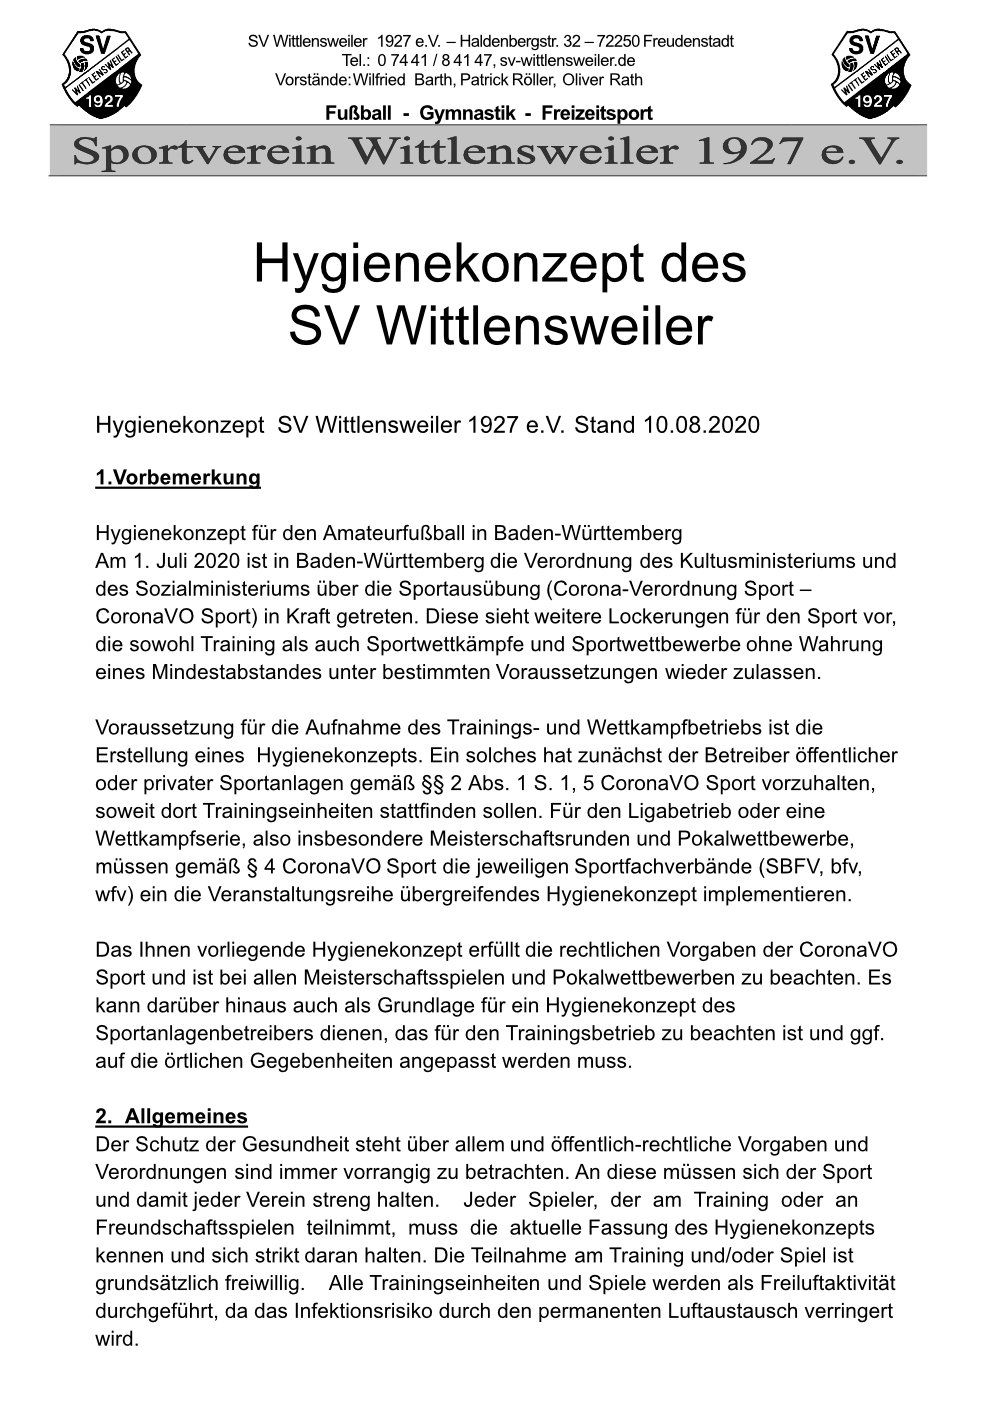 SV Wittlensweiler - Hygienekonzept